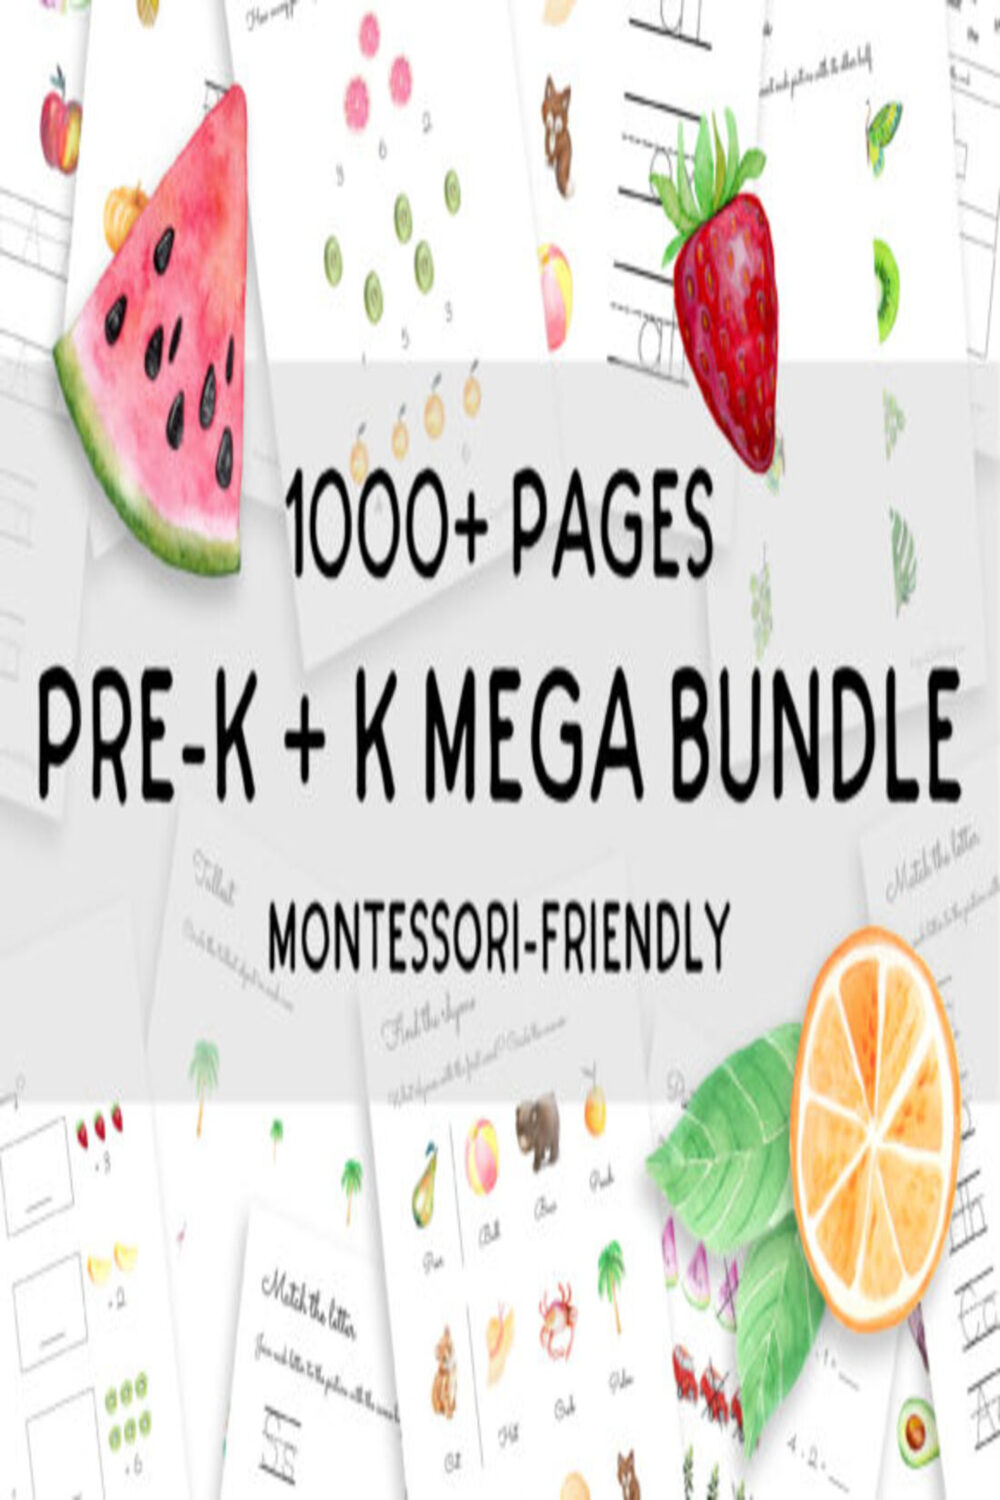 PreK K Learning MEGA BUNDLE 1000+ Pages pinterest preview image.